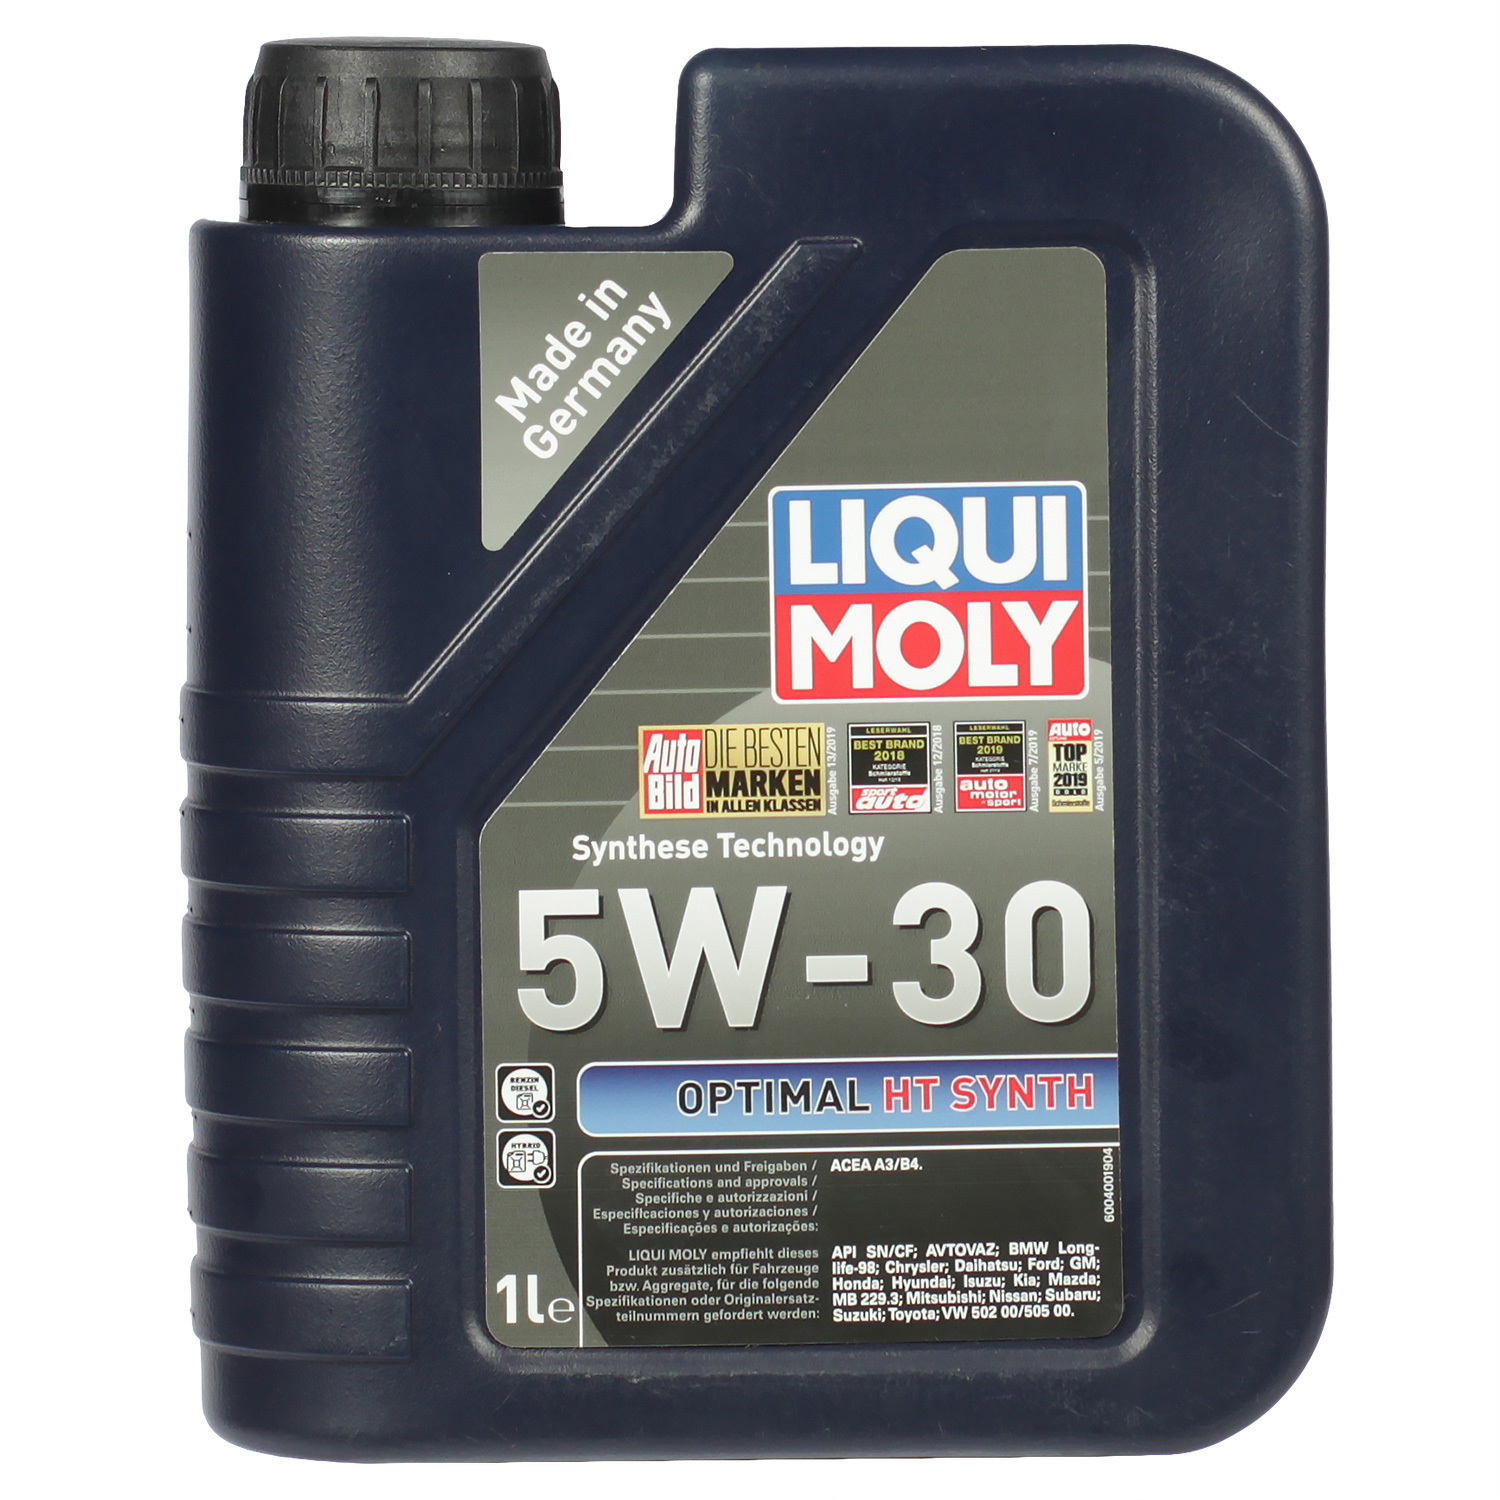 Liqui Moly Моторное масло Liqui Moly Optimal HT Synth 5W-30, 1 л масло моторное liqui moly нt optimal synth 5w 30 sl cf а3 в4 1 л синтетика